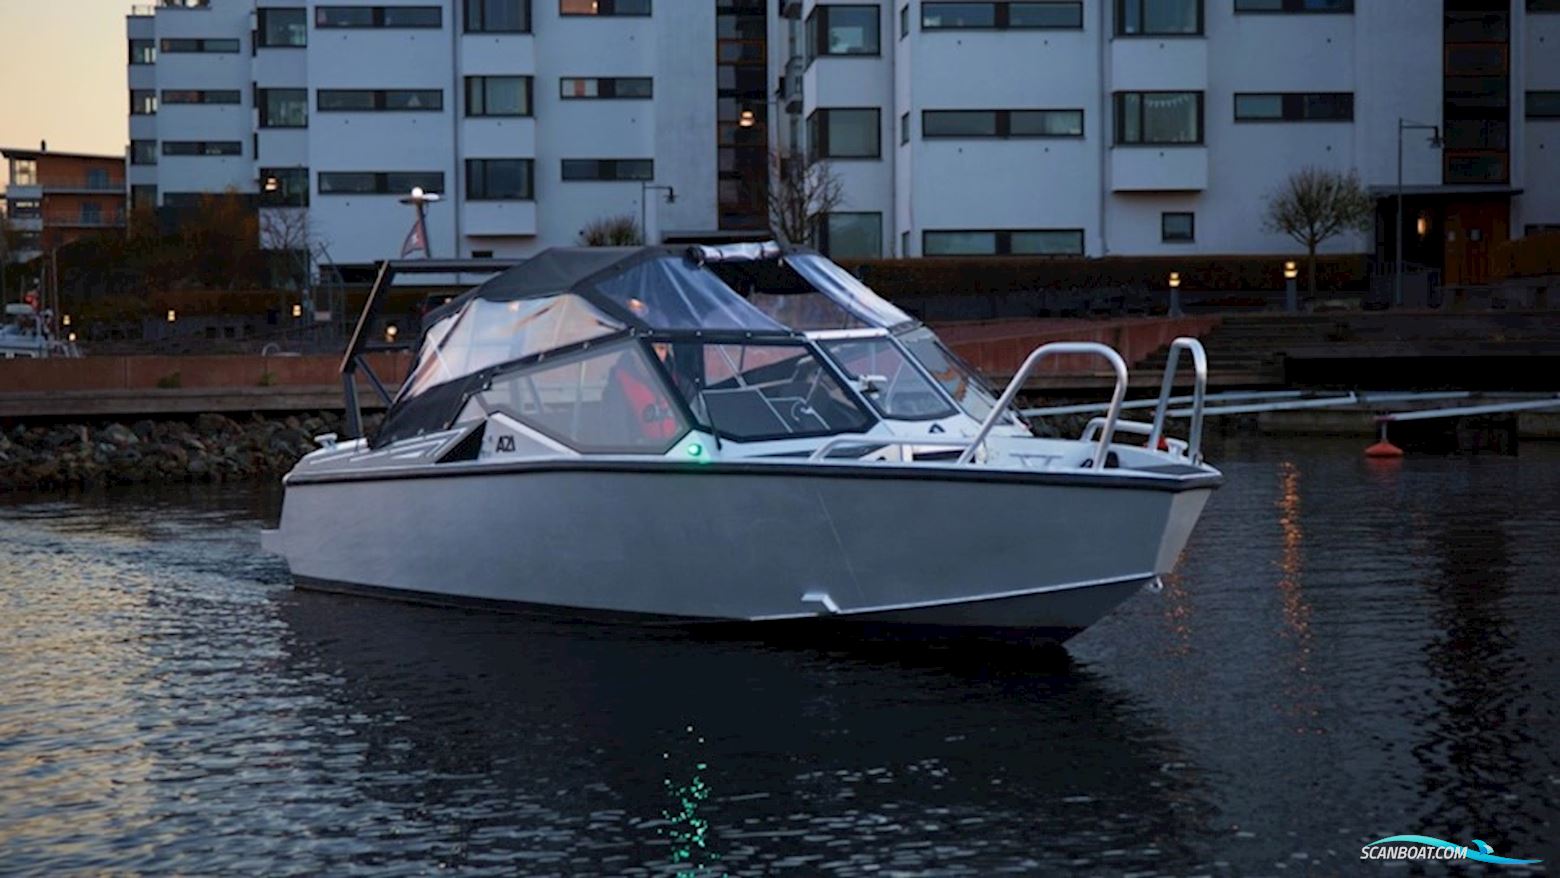 Anytec A21 Motorbåd 2020, med Mercury F150 Exlpt Efi motor, Sverige